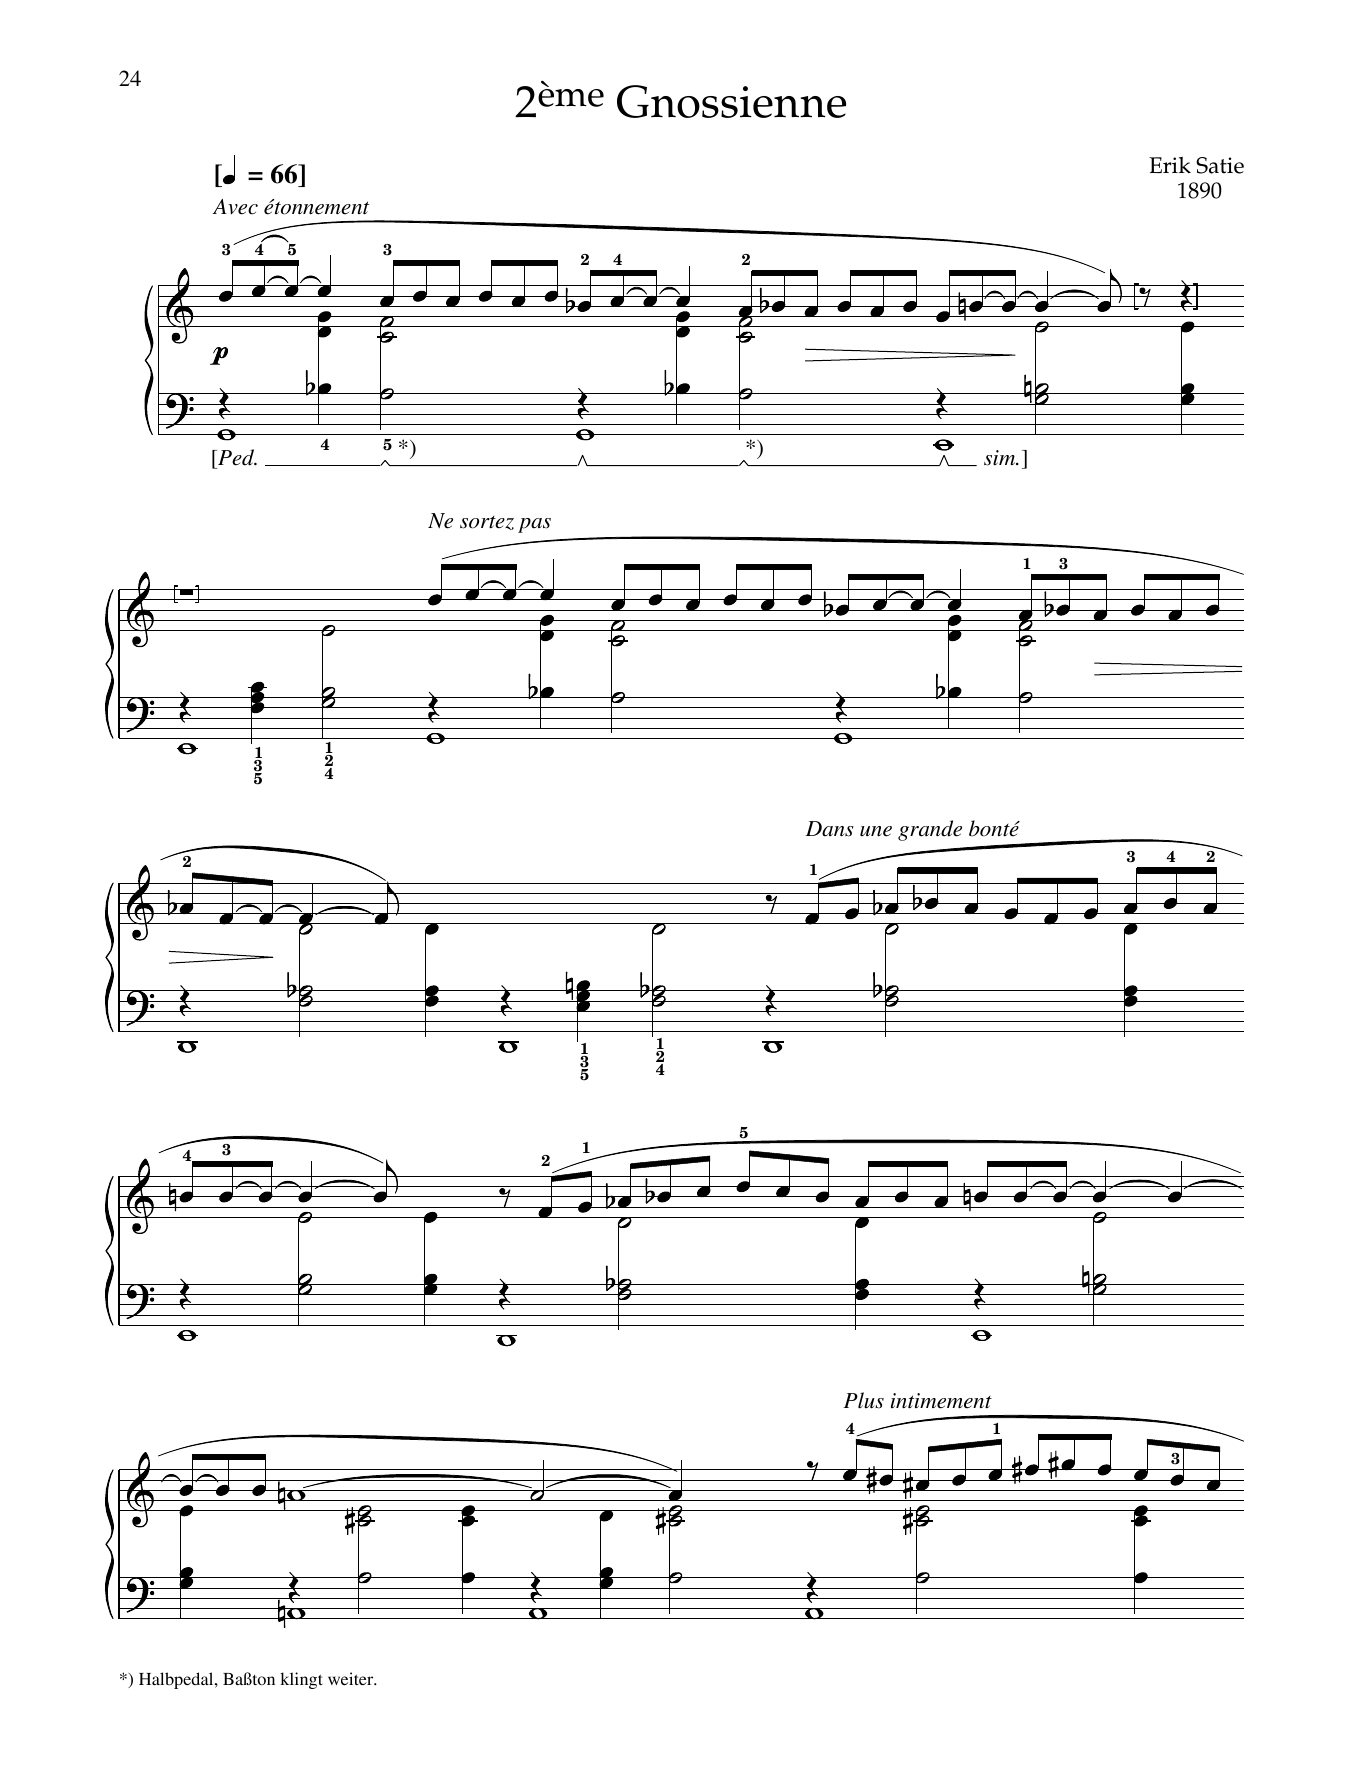 Download Erik Satie 2eme Gnossienne Sheet Music